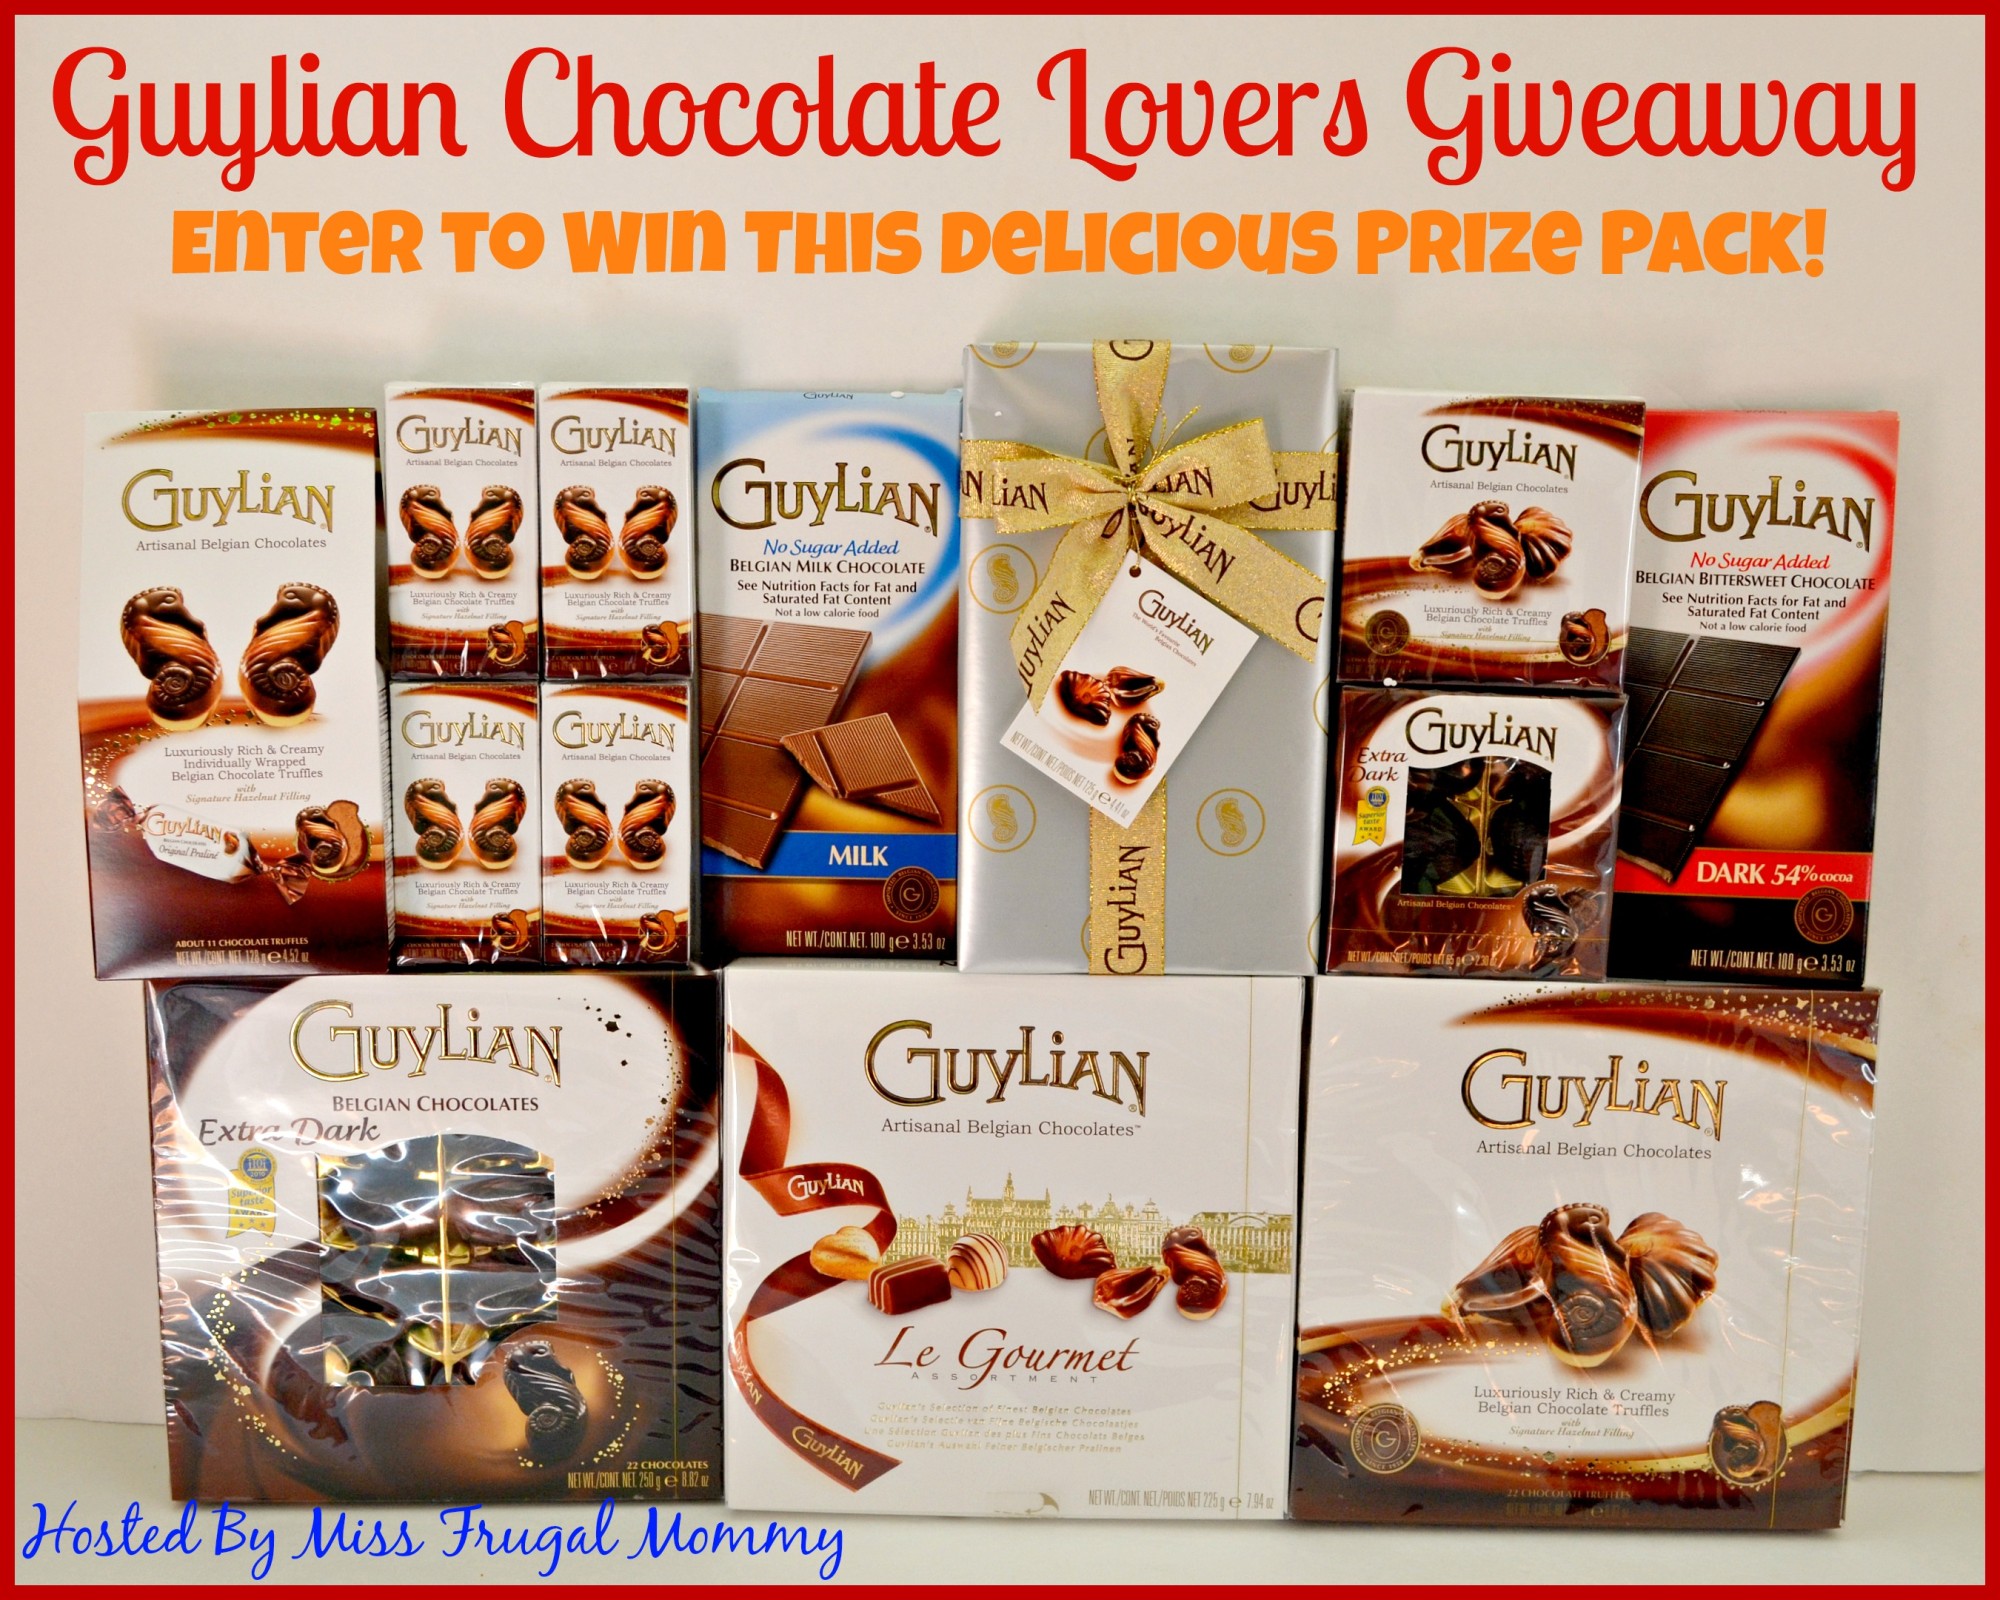 Guylian Chocolate Lovers Giveaway